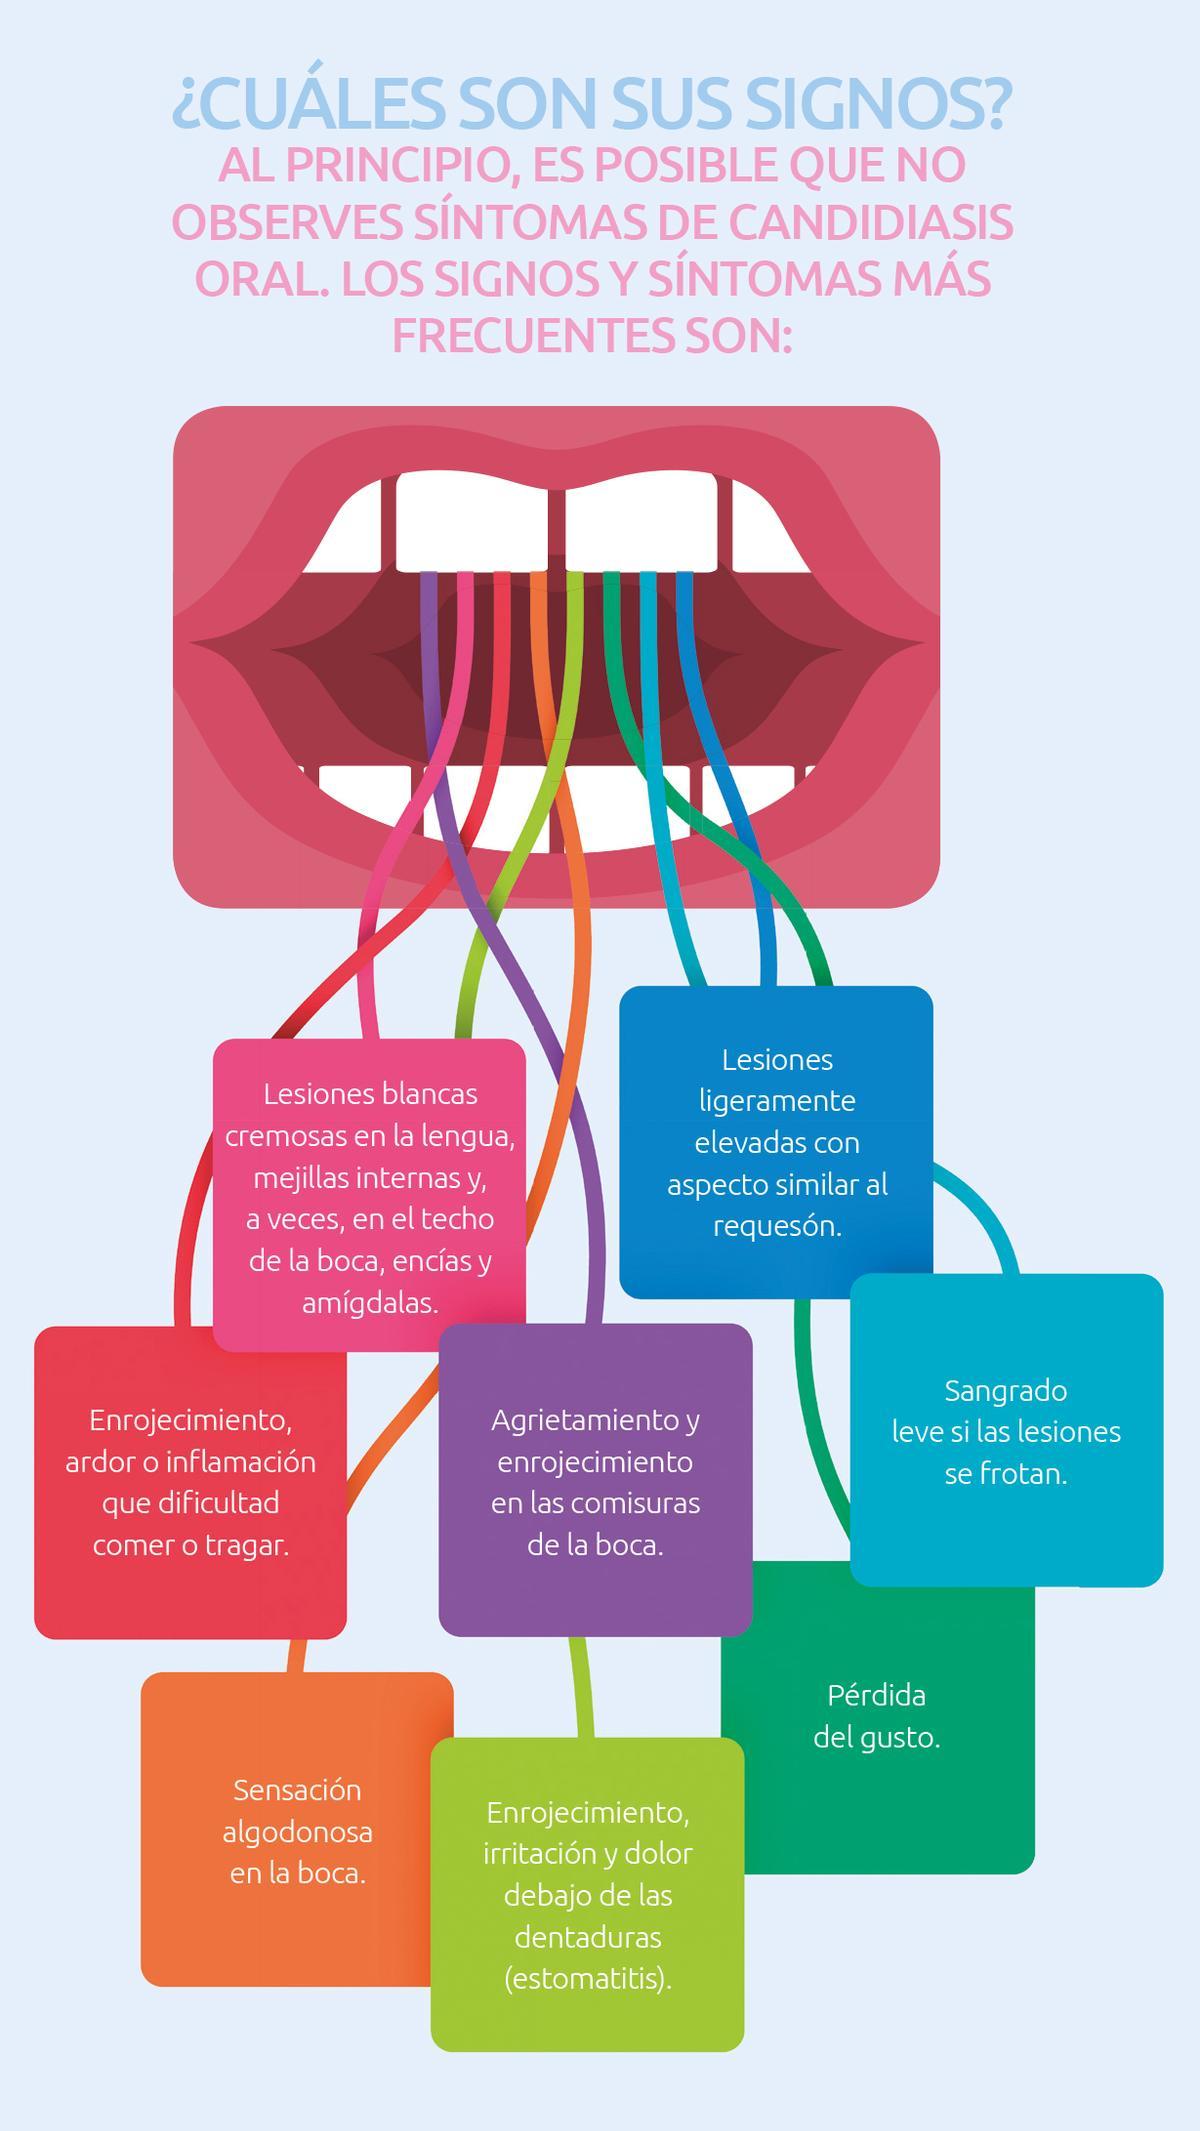 Signos de la candidiasis oral